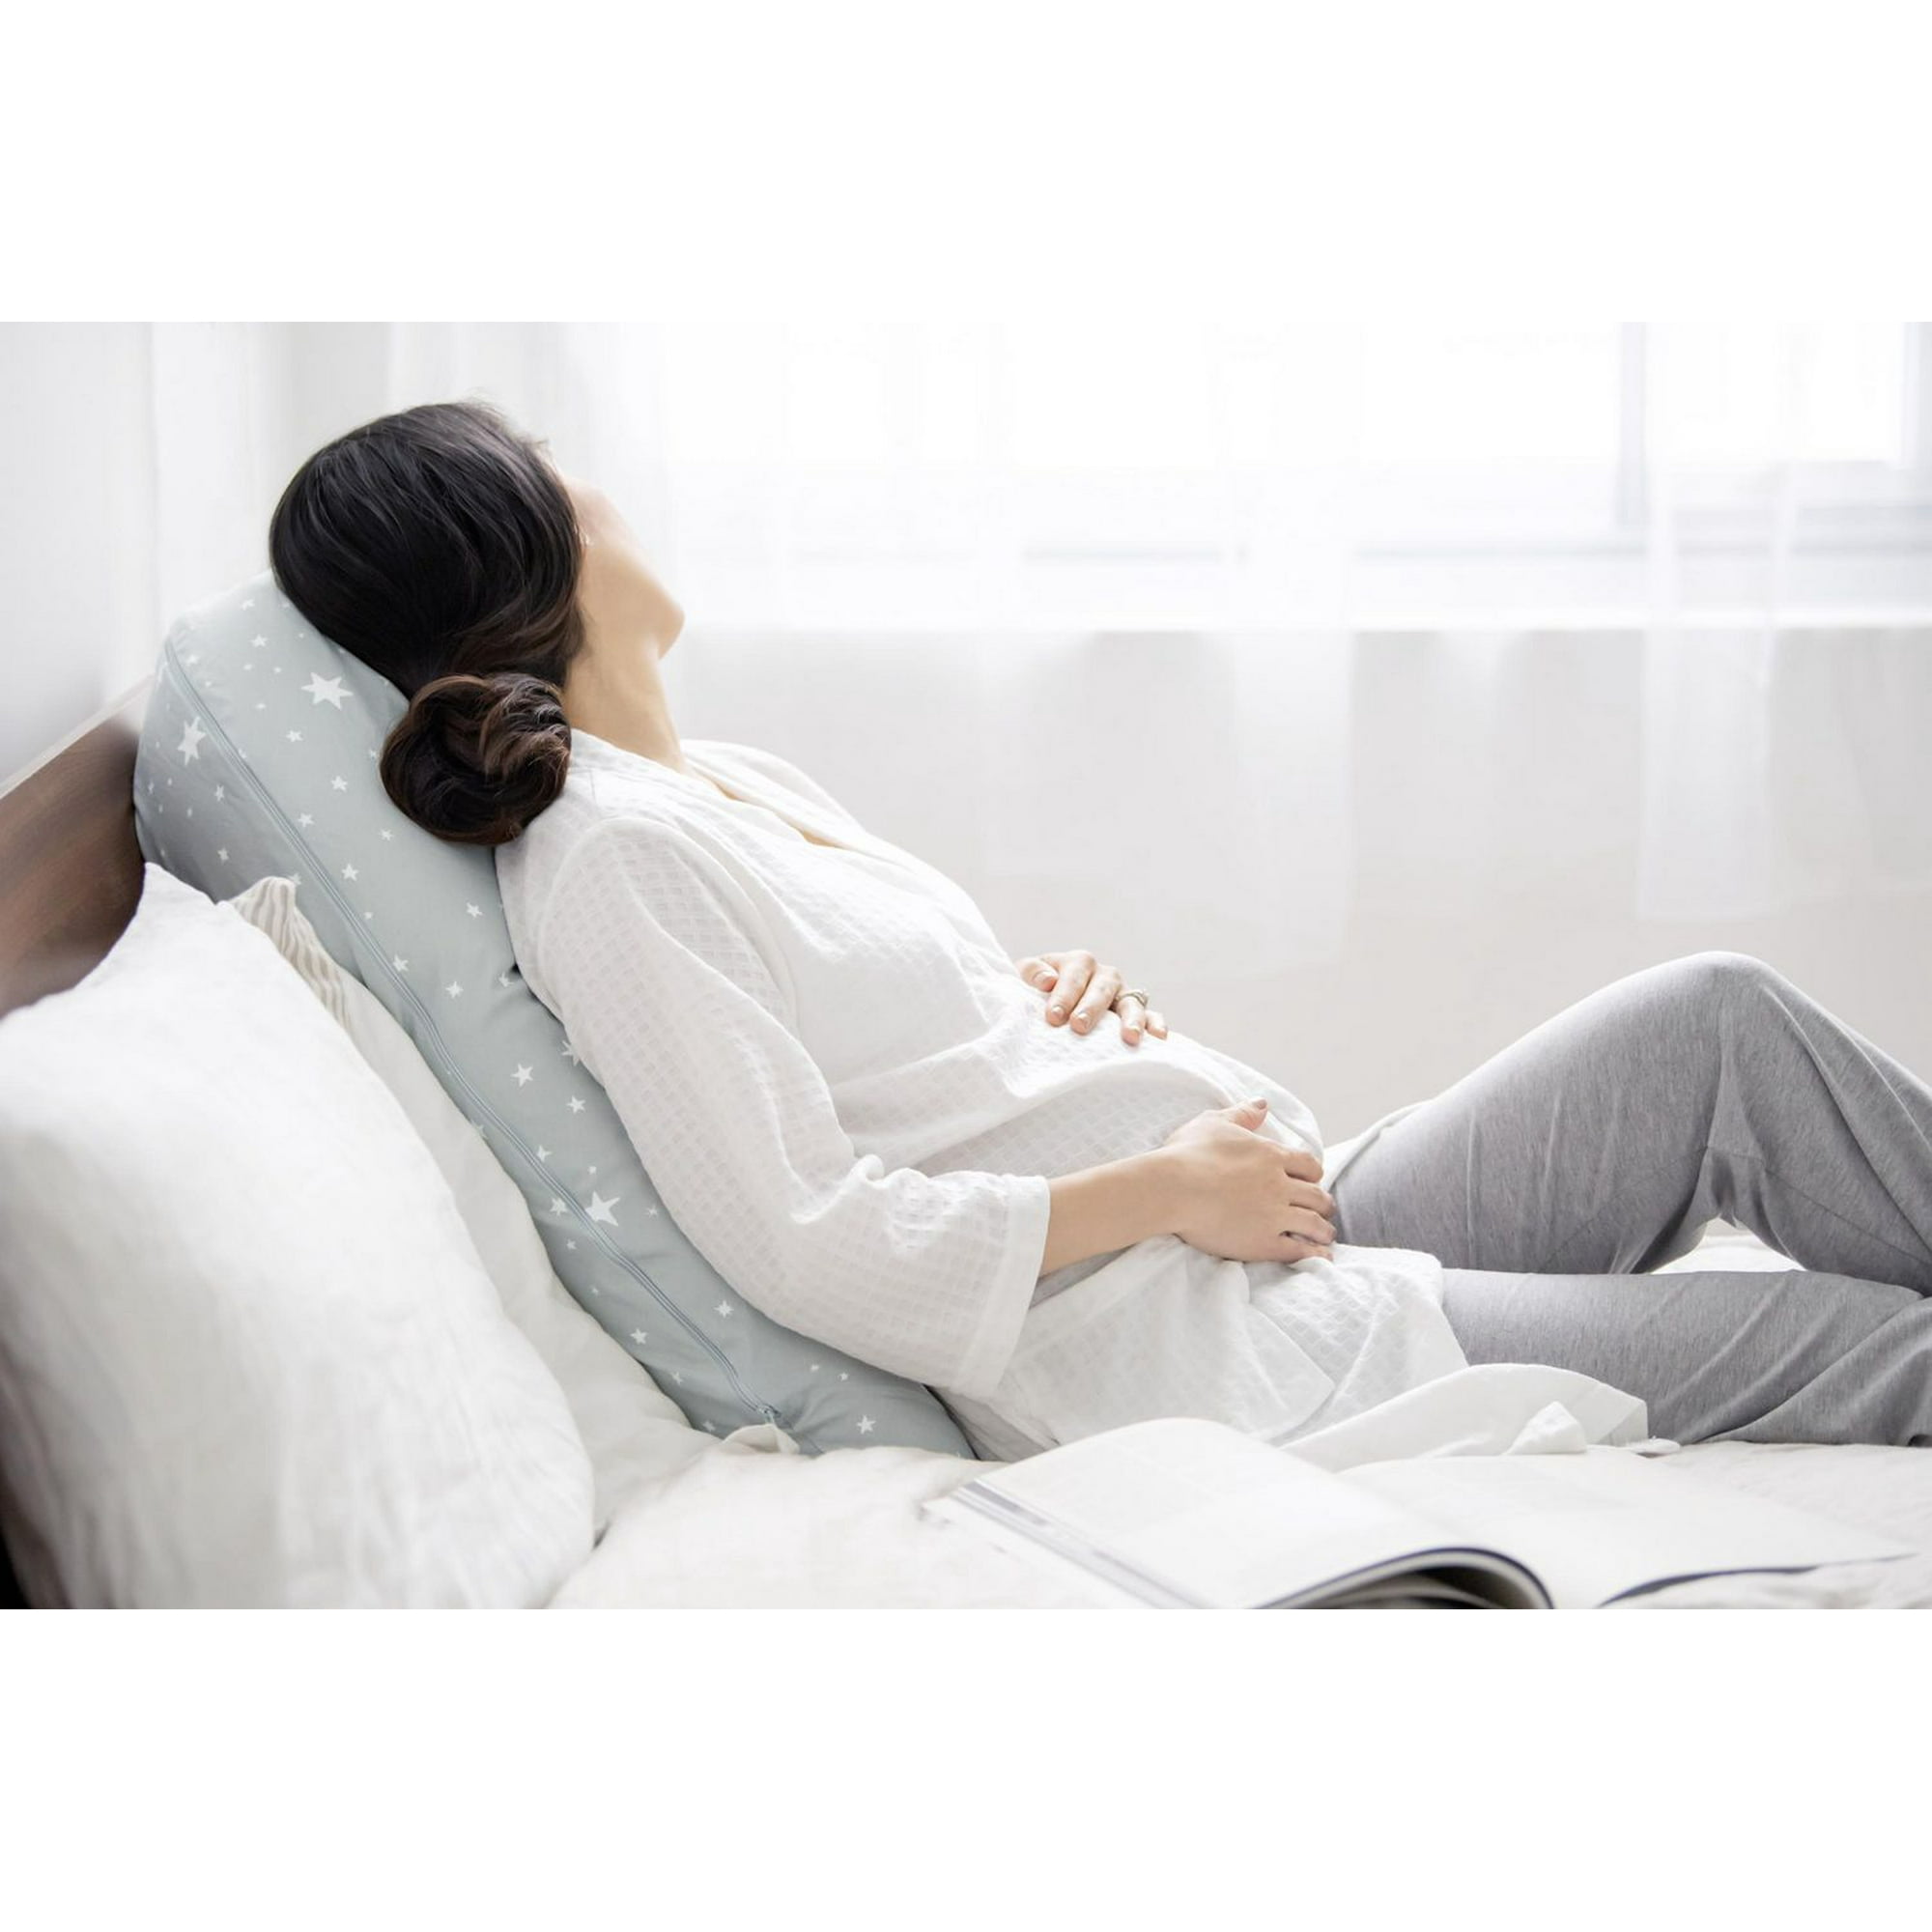 Medela Maternity and Nursing Pillow